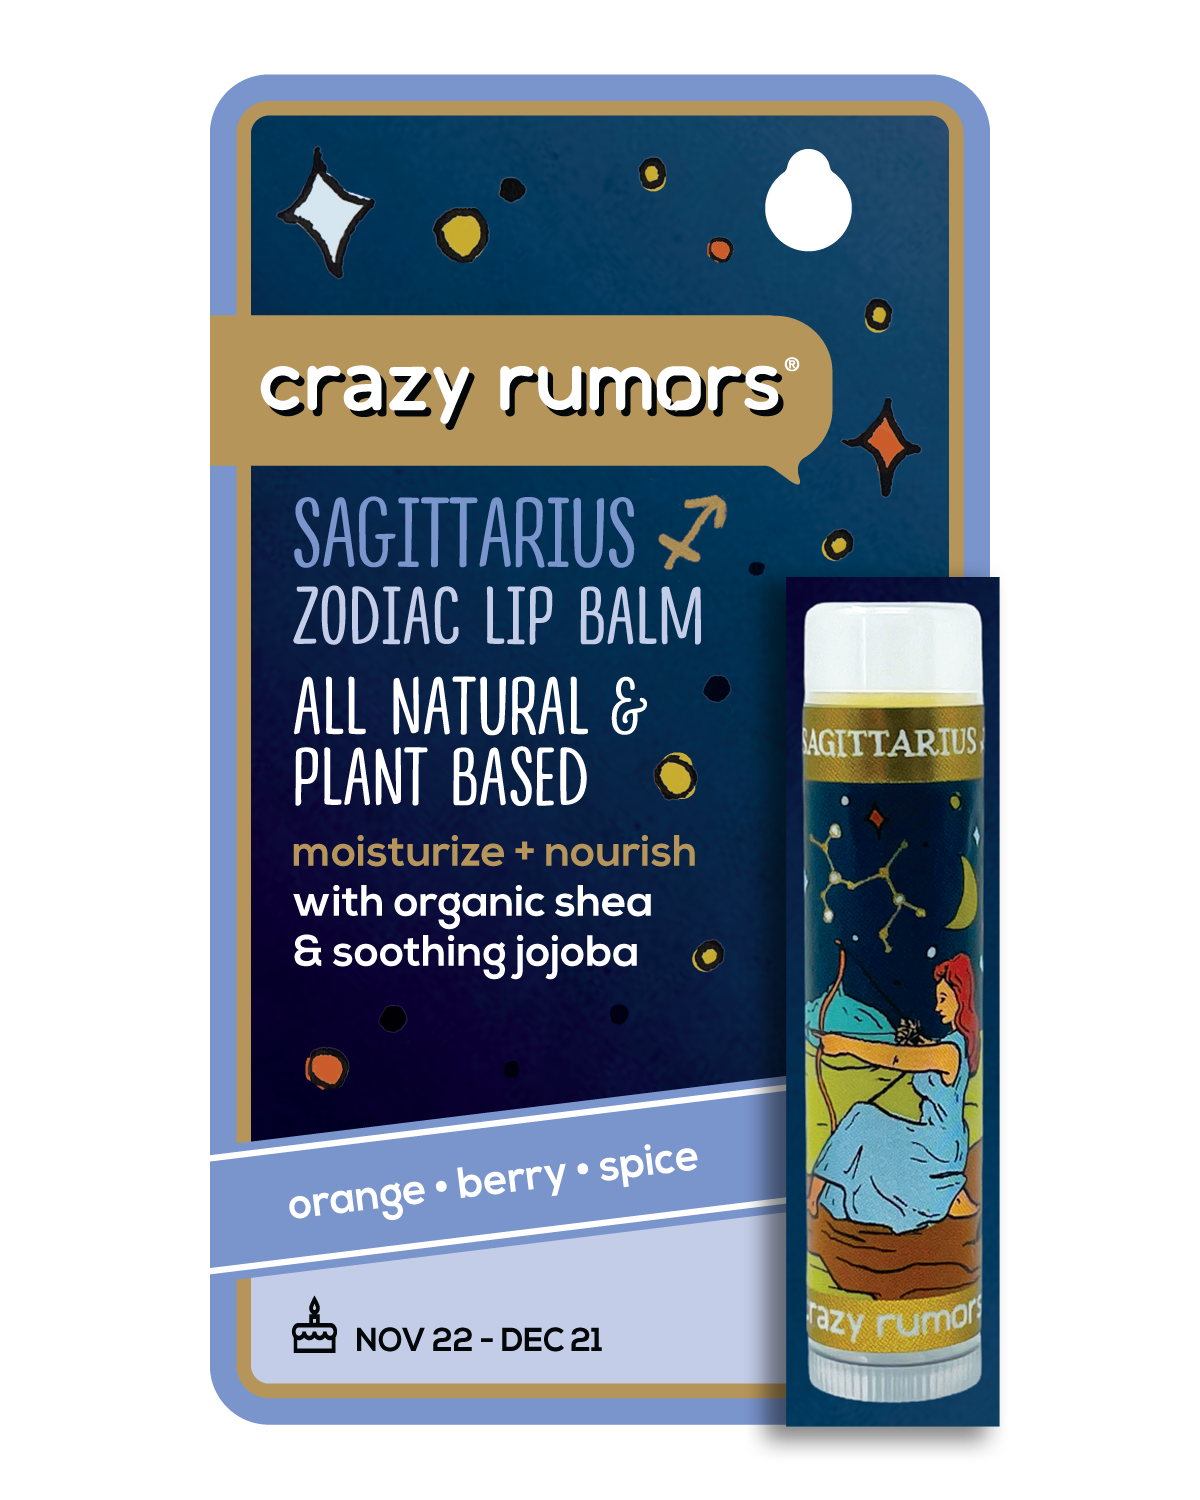 Crazy Rumors - Sagittarius,  Zodiac Lip Balm